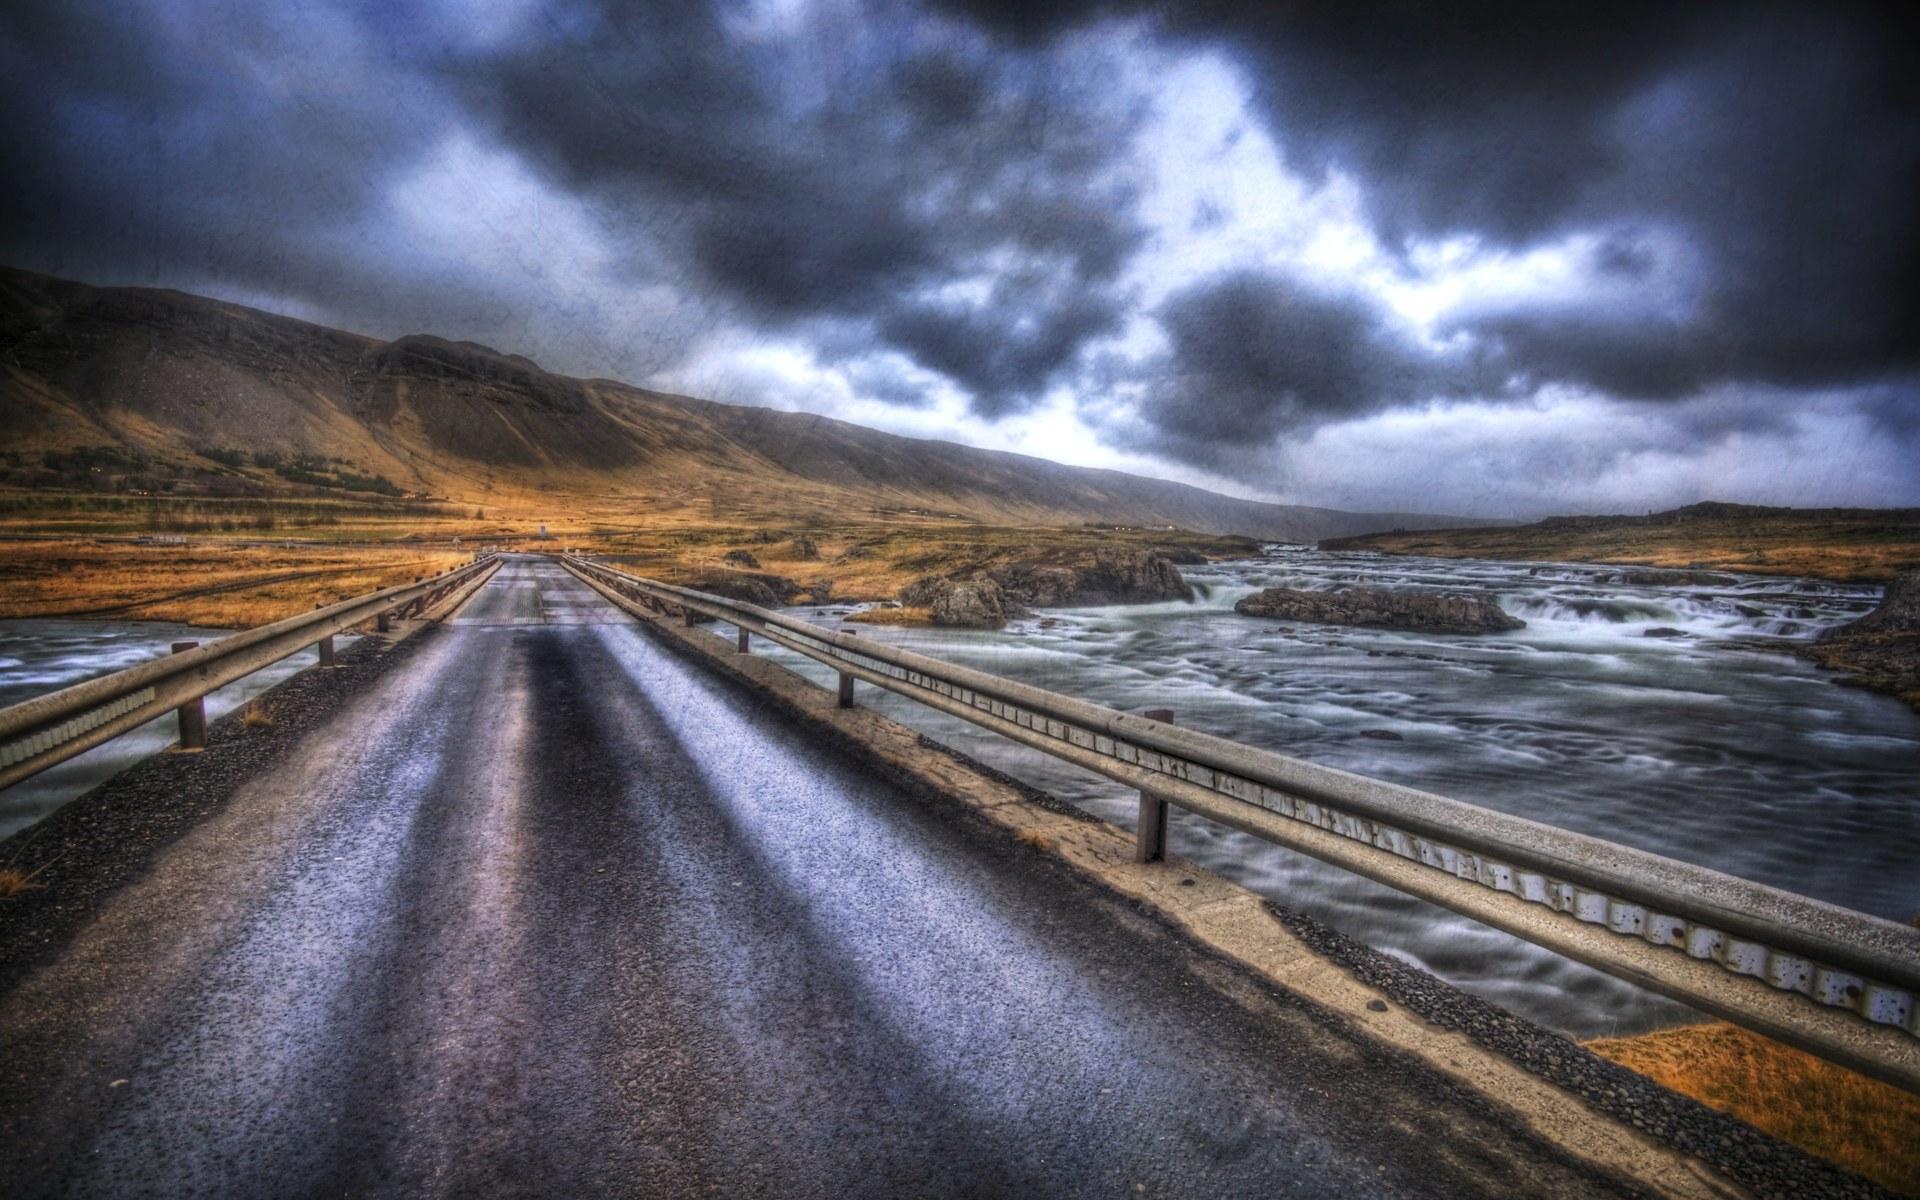 HDR Iceland Landscape The Road Home to Reykjavik Wallpaper